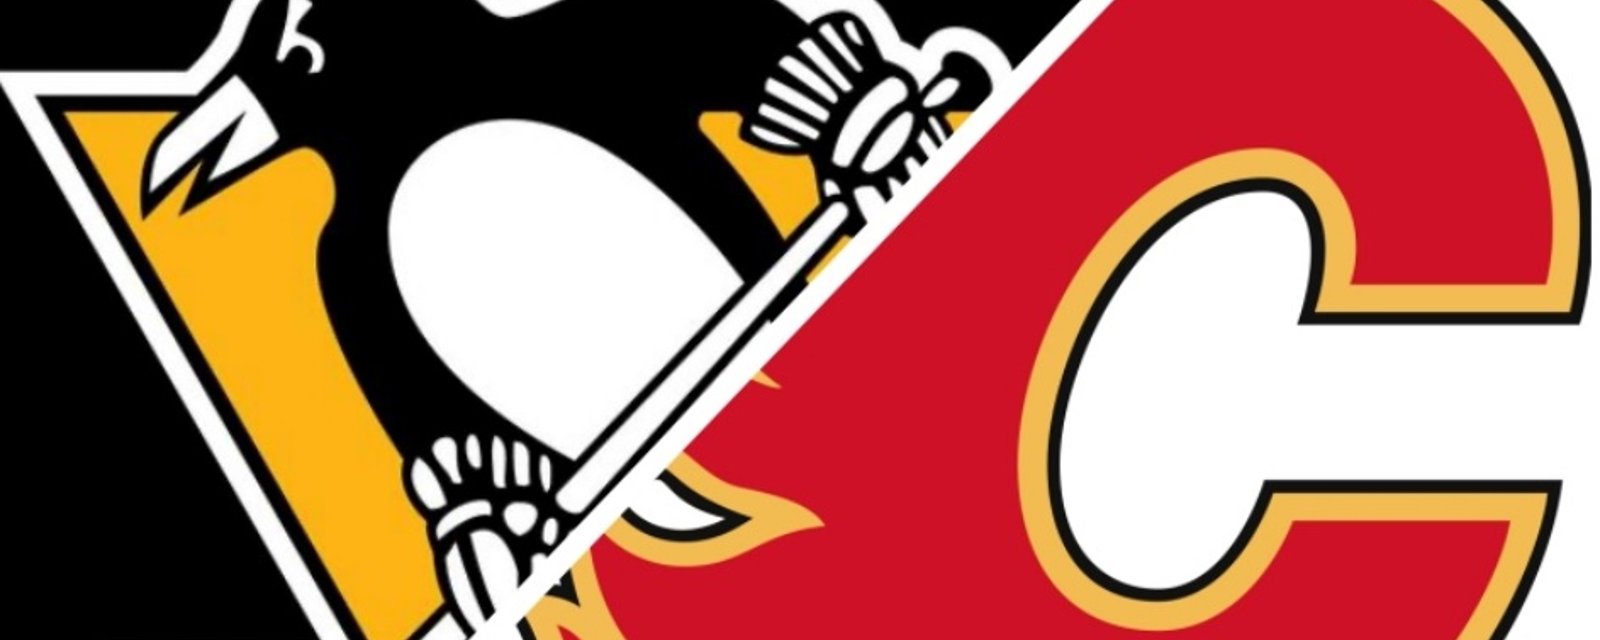 Les Flames ont volontairement mis des bâtons dans les roues des Penguins